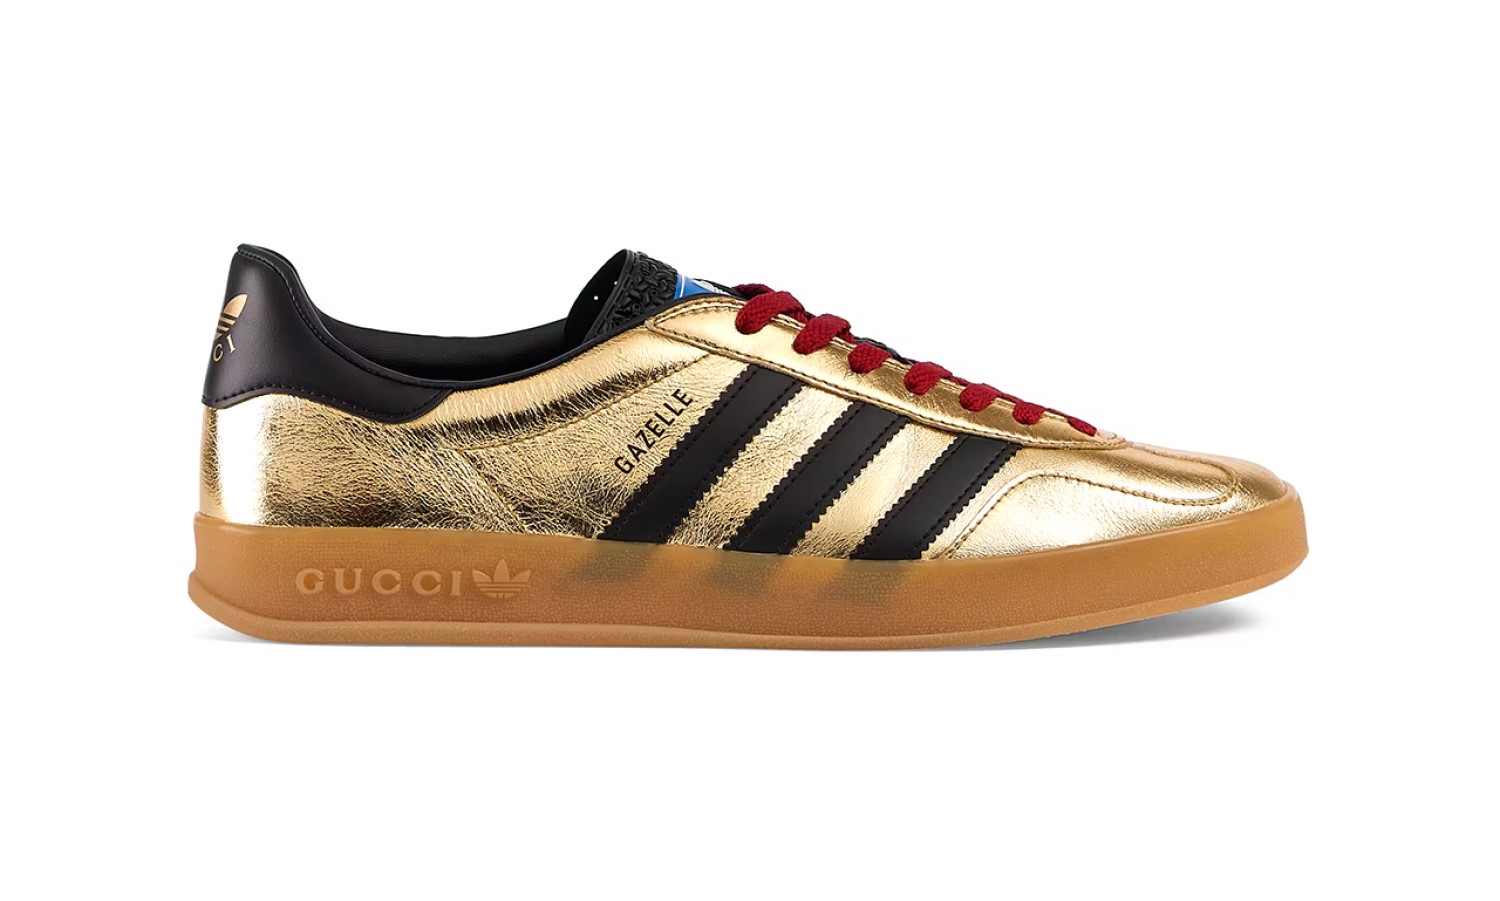 Gucci Adidas Gazelle, lujo para al fútbol: el precio prohibitivo de estas zapatillas dejará asombrado – FayerWayer